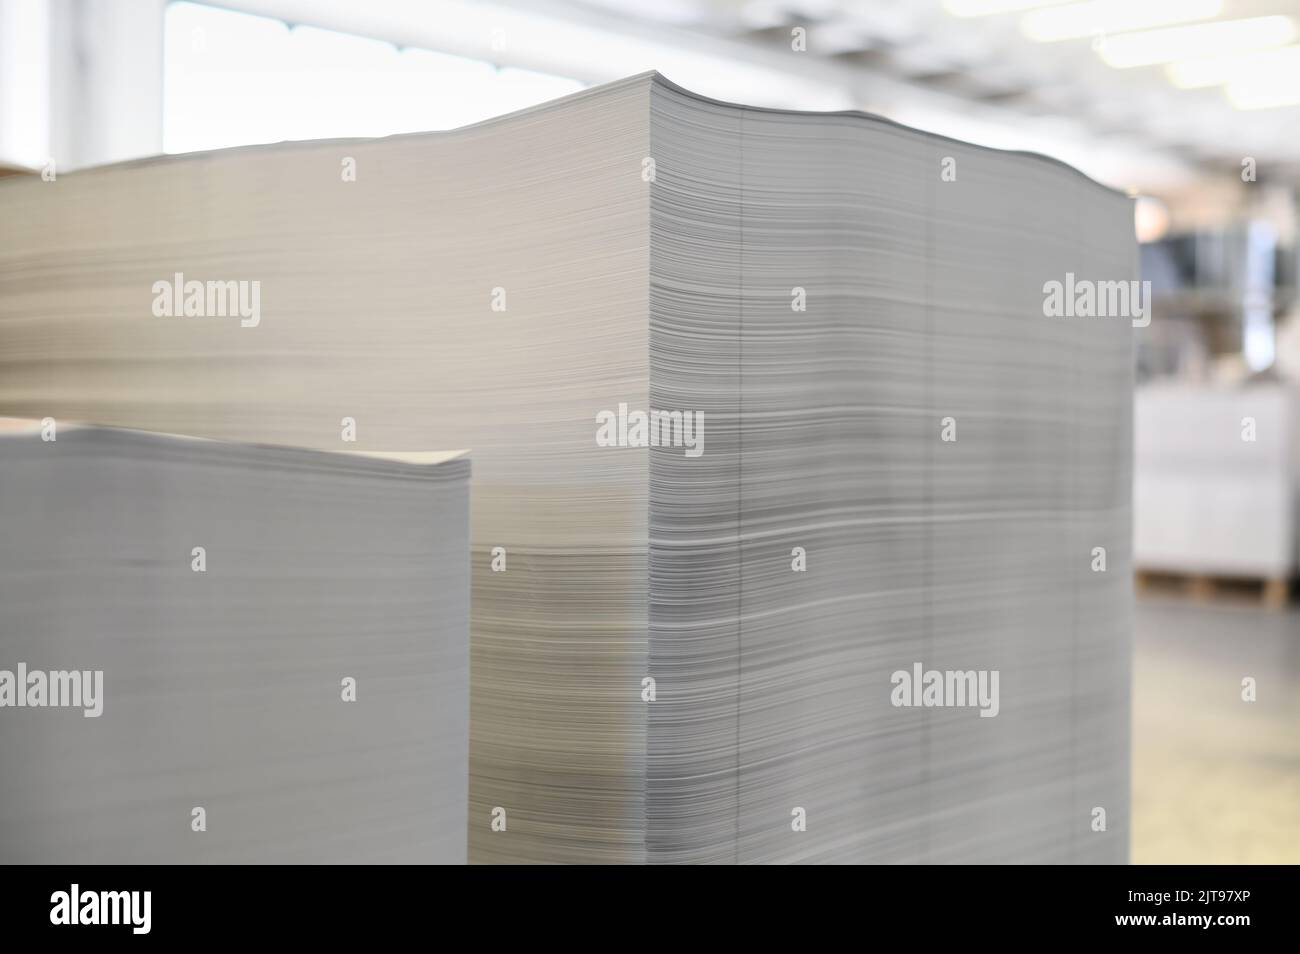 Hojas de papel de impresión blancas apiladas durante la jornada laboral en un taller de tipografía profesional iluminado por el sol Foto de stock